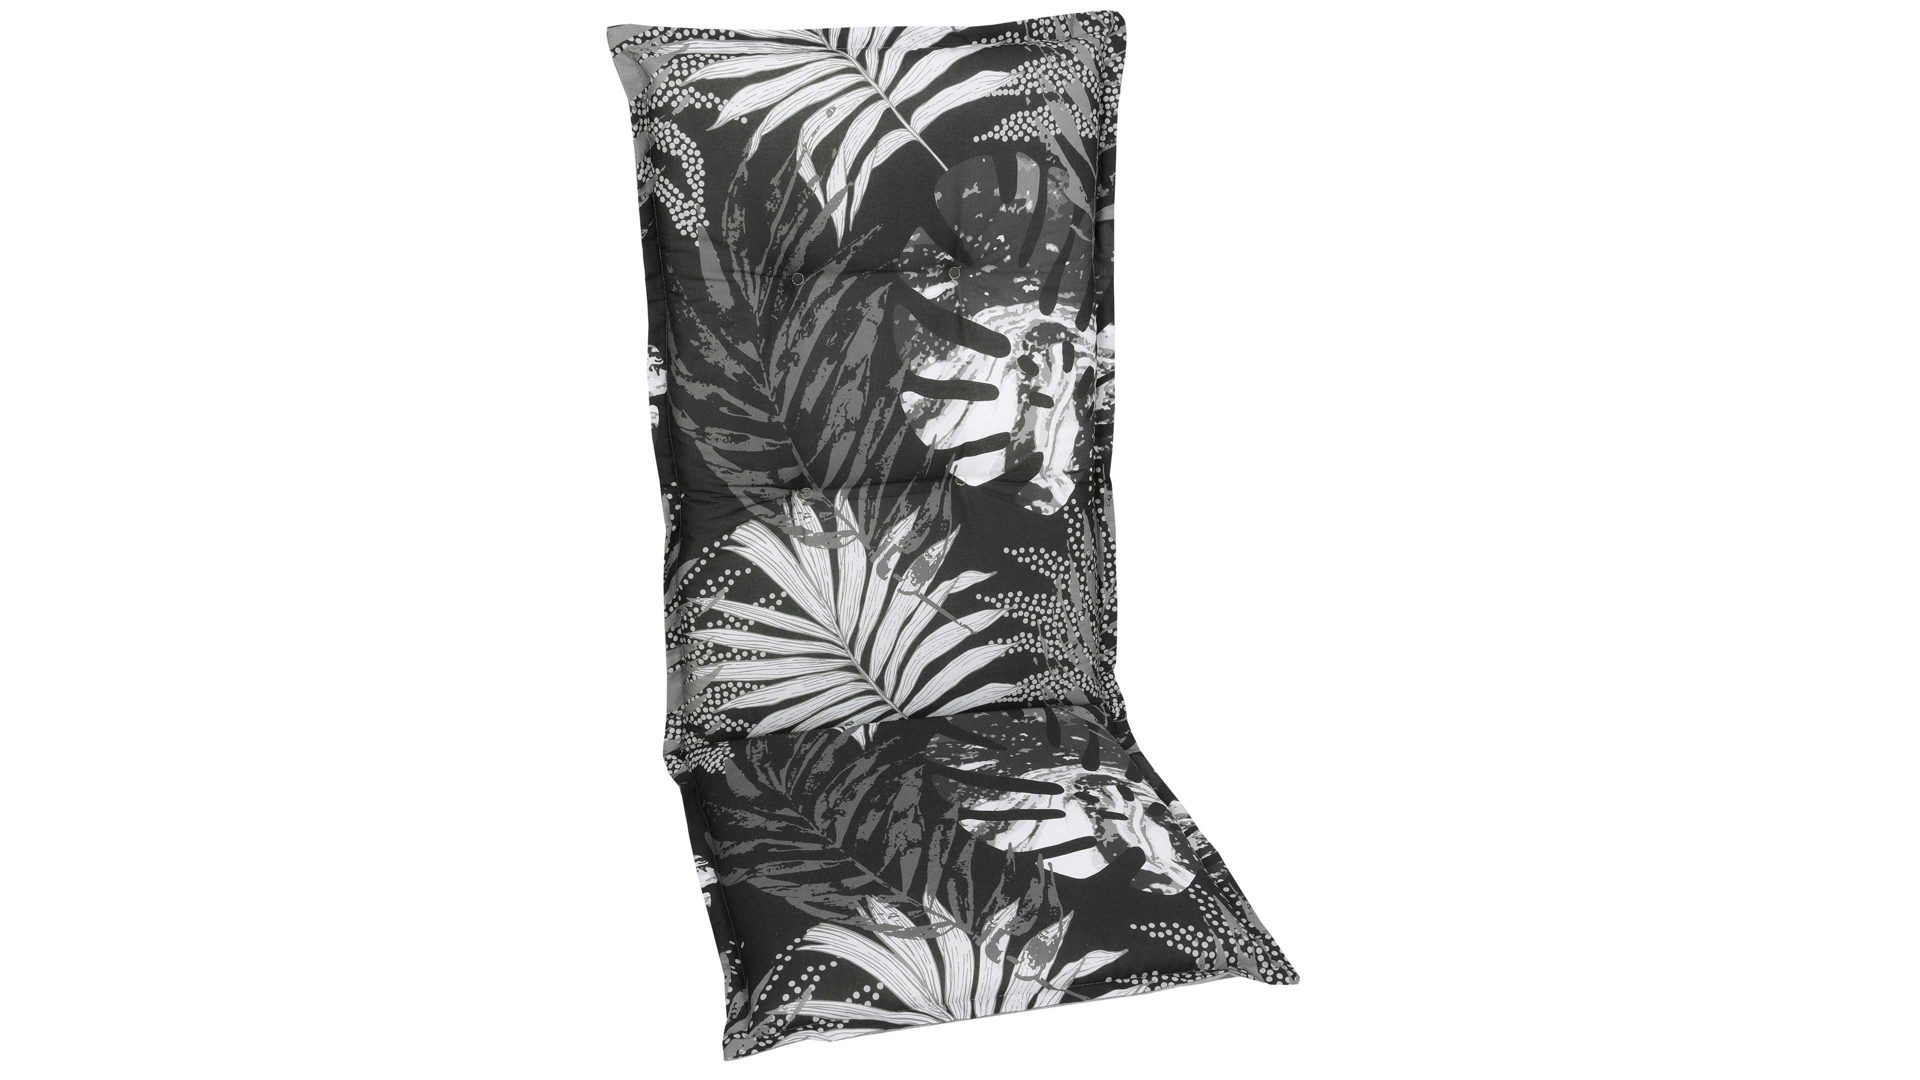 Polsterauflage Go-de textil aus Stoff in Schwarz GO-DE Auflagen-Serie 19 - Hochlehnerauflage schwarz-weißes Blättermotiv - ca. 50 x 120  cm